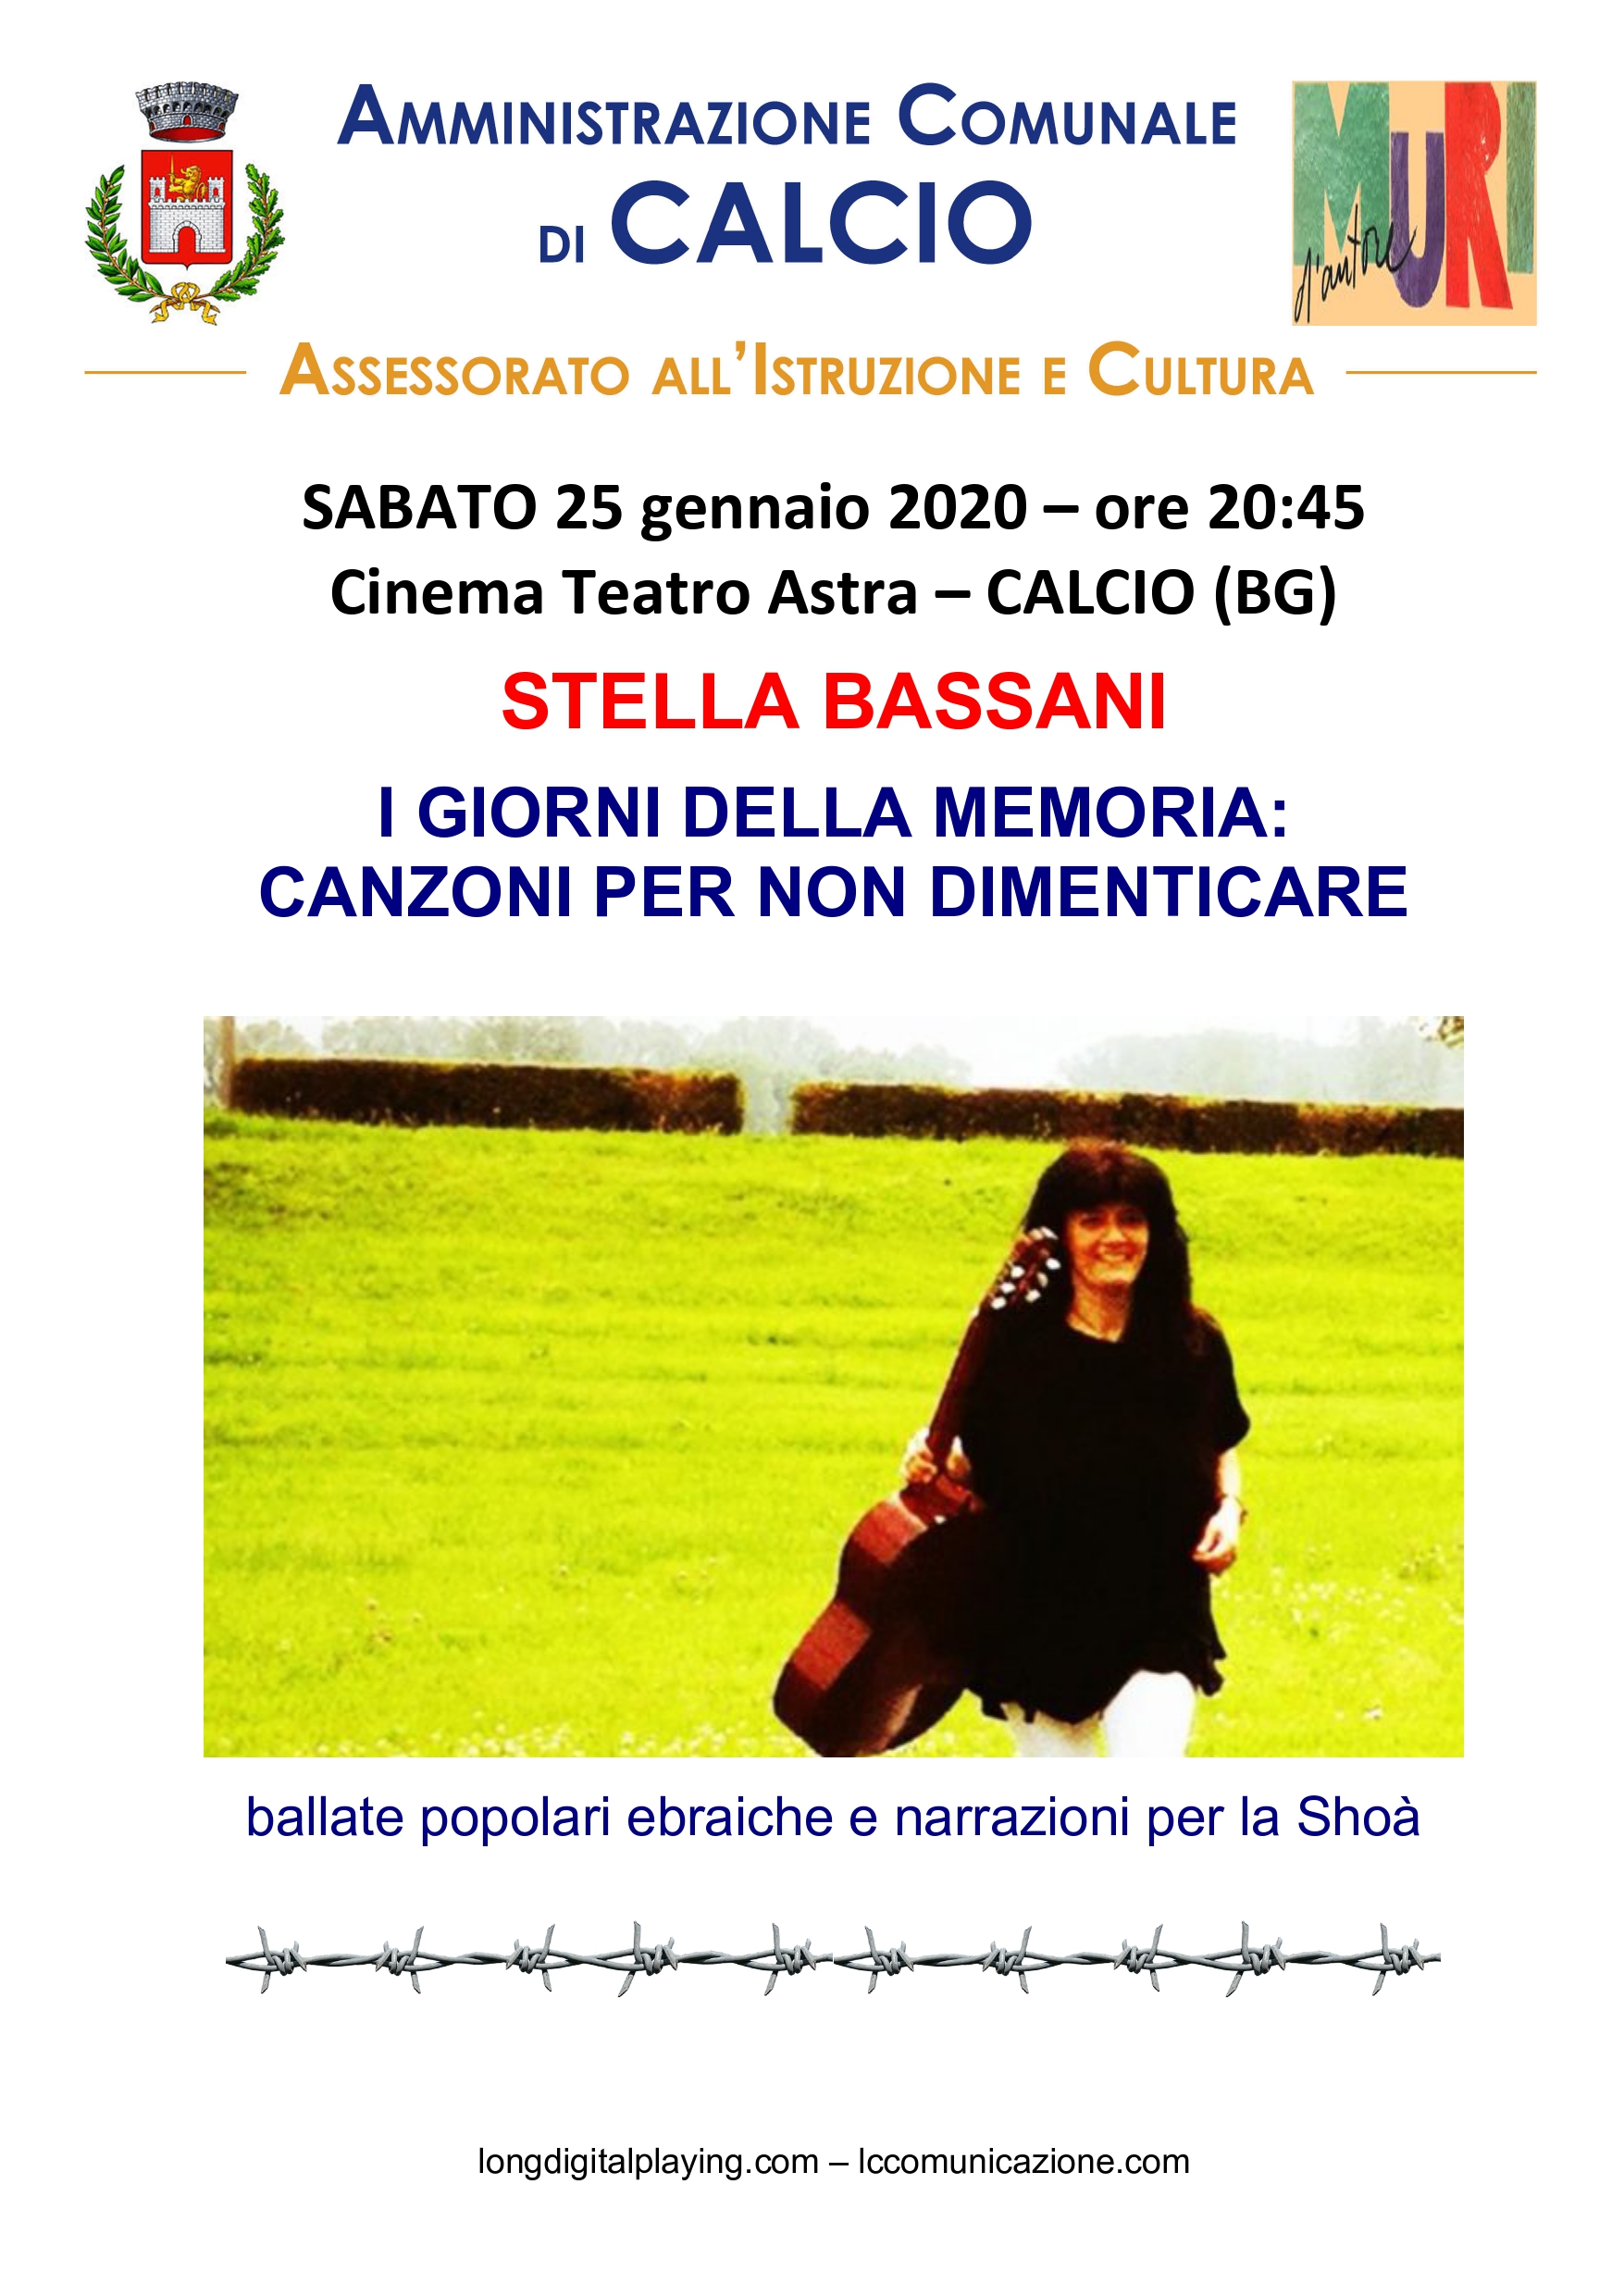 Stella Bassani